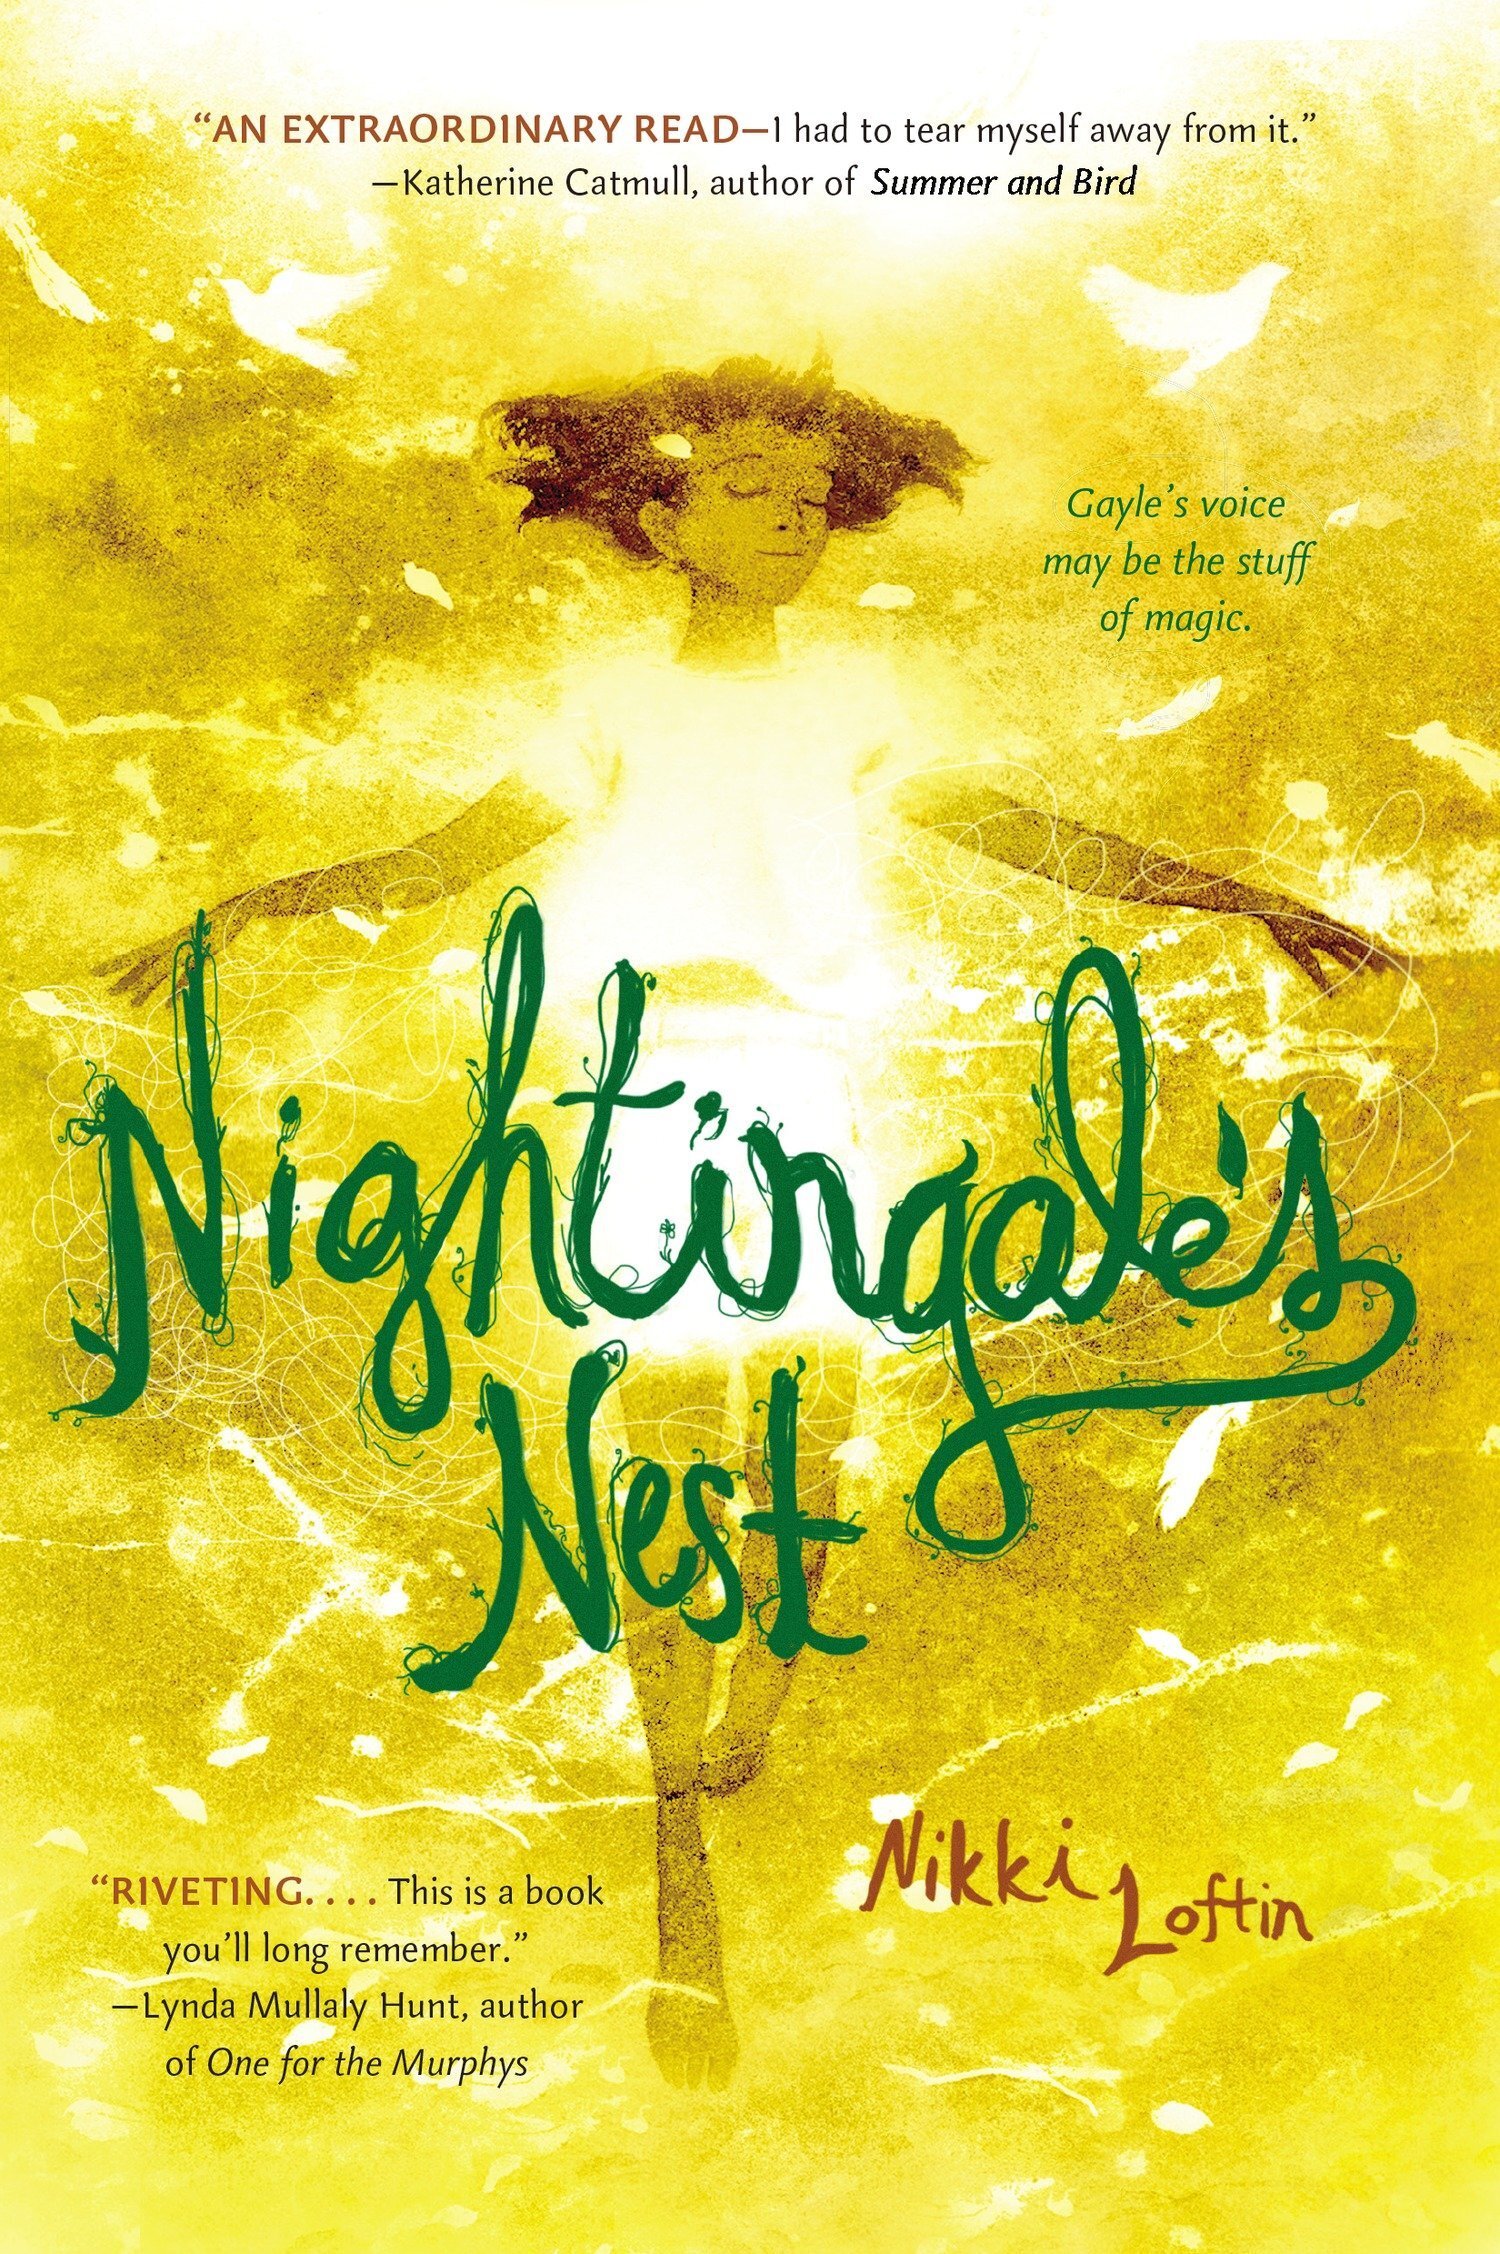 Nightingale’s Nest -Nikki Loftin 